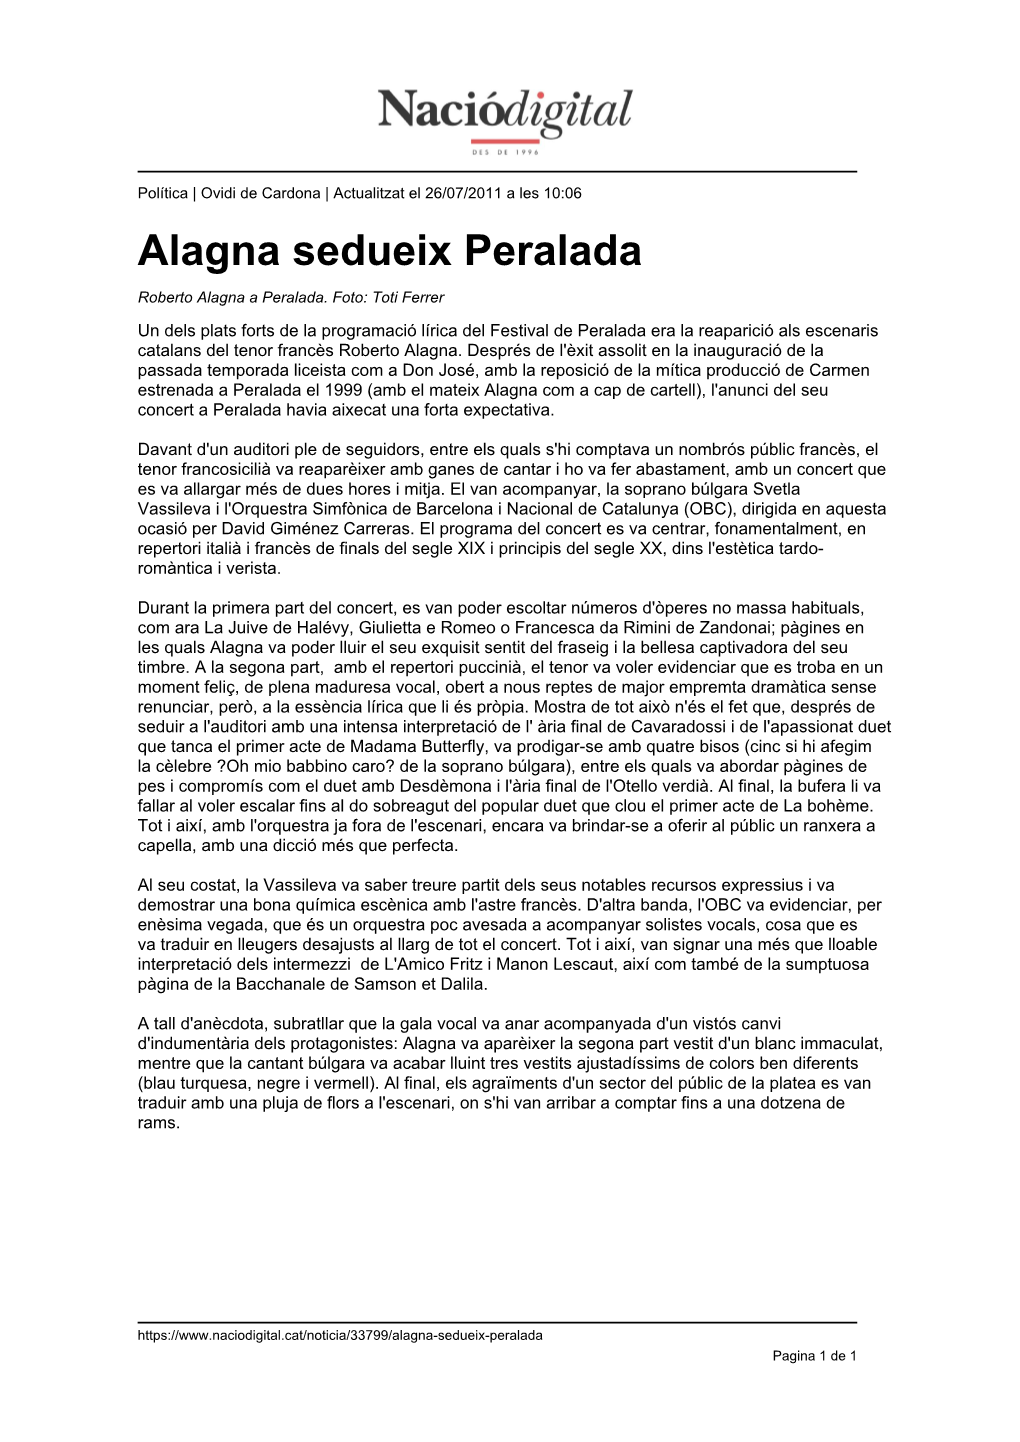 Alagna Sedueix Peralada